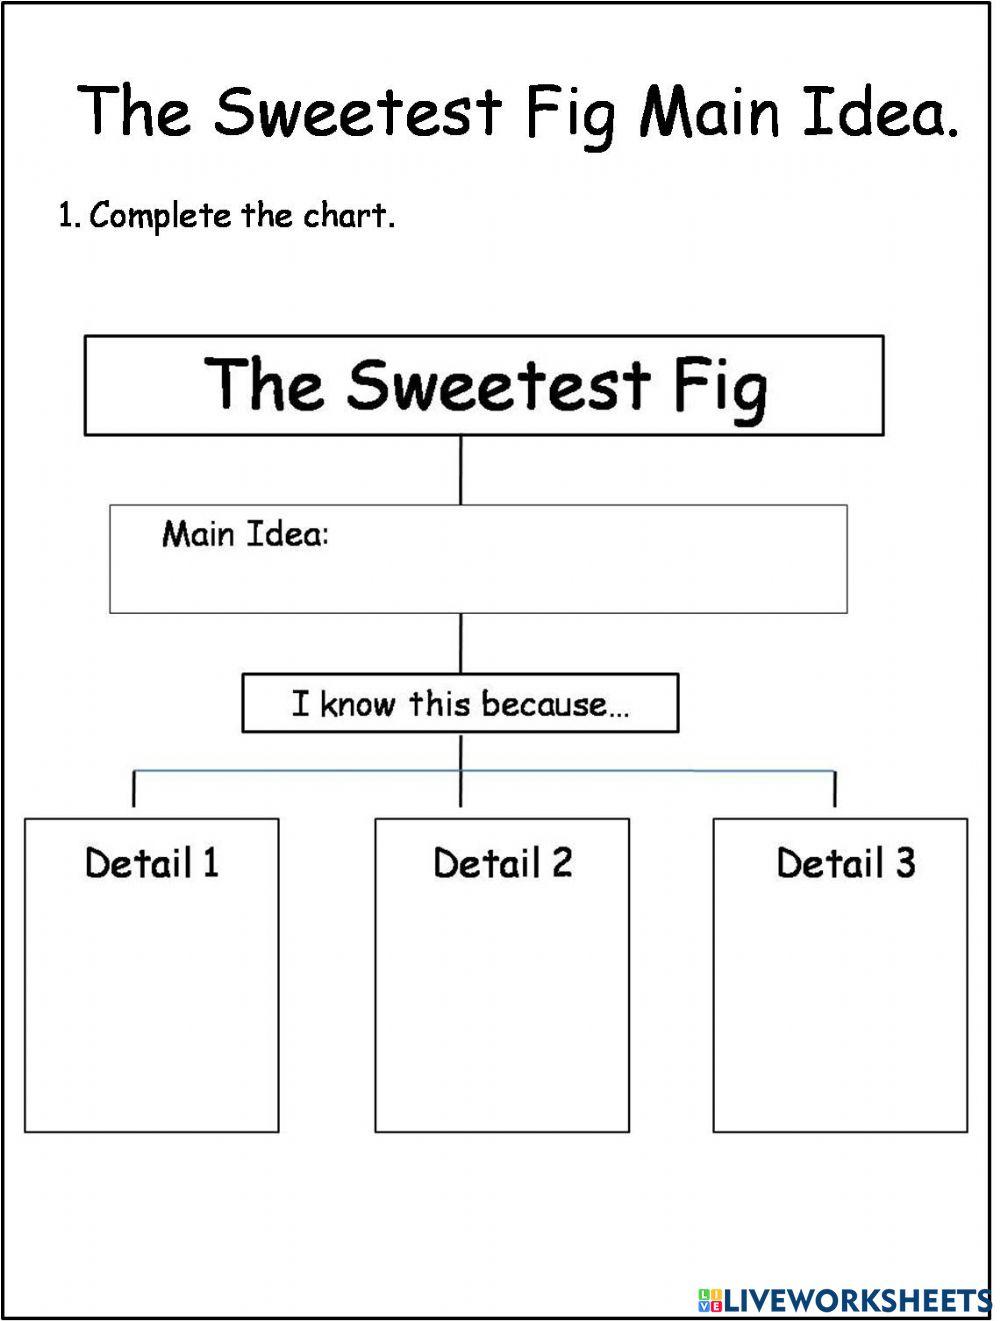 The Sweetes Fig Main Idea